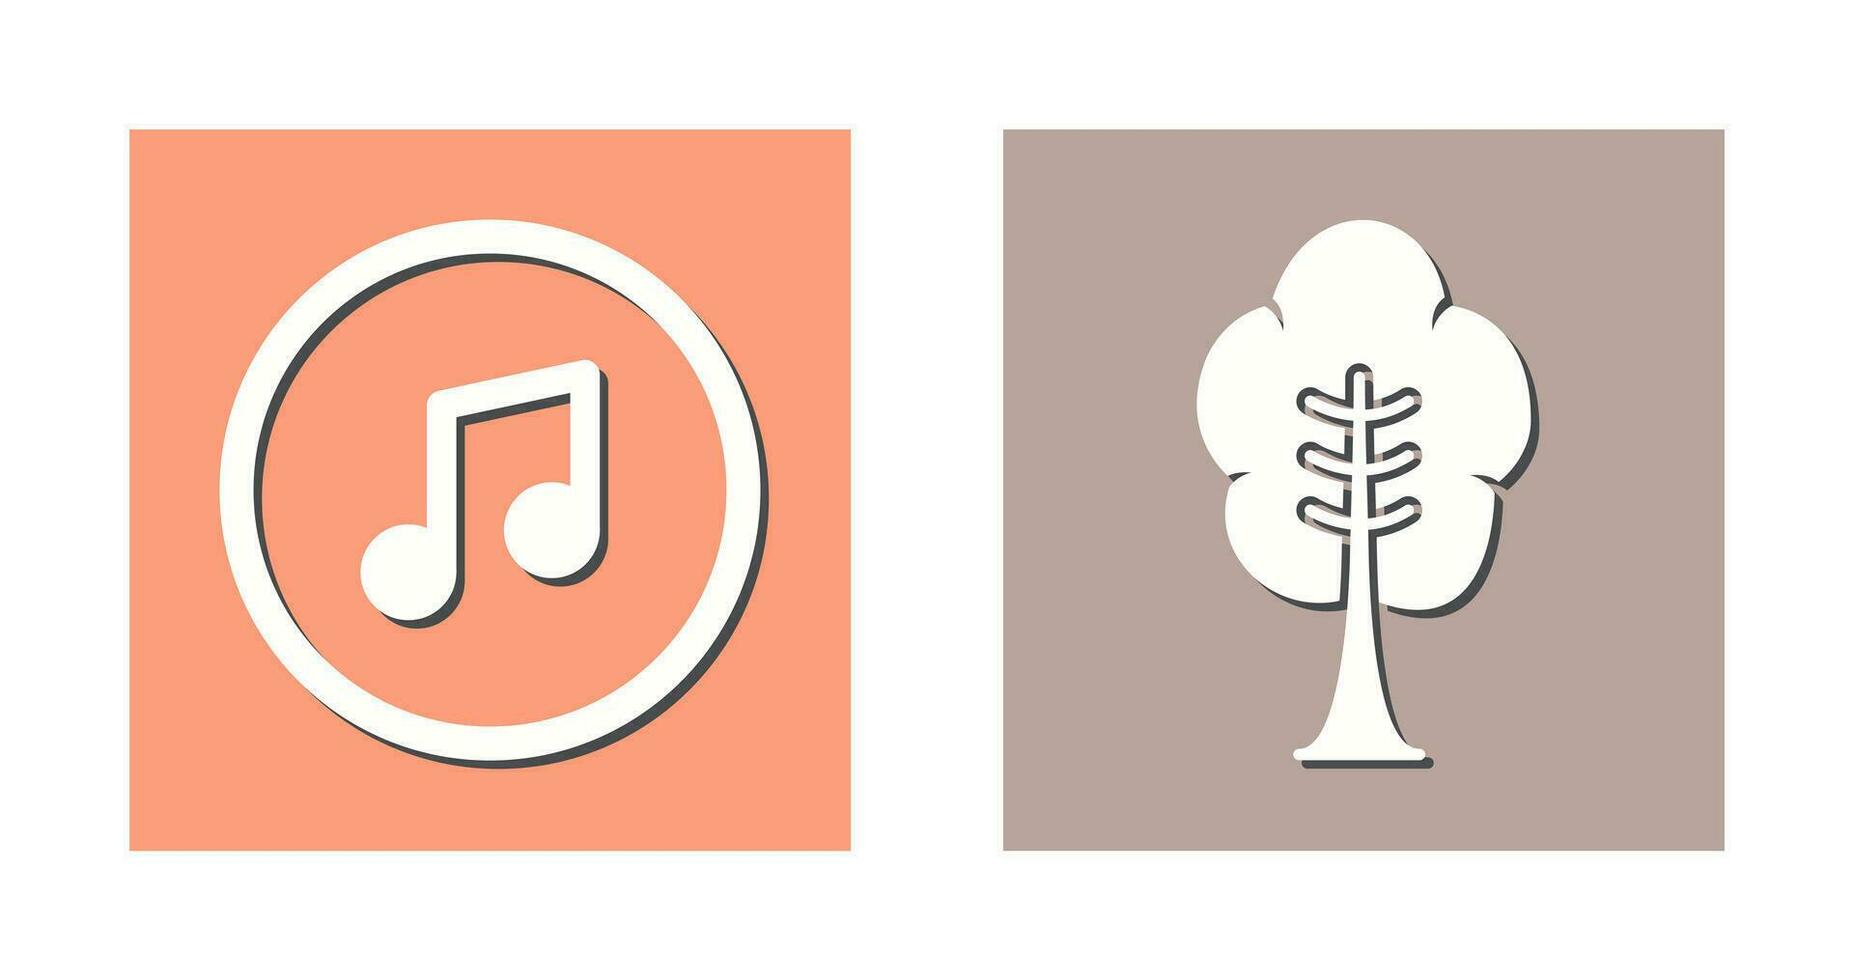 la musique joueur et arbre icône vecteur